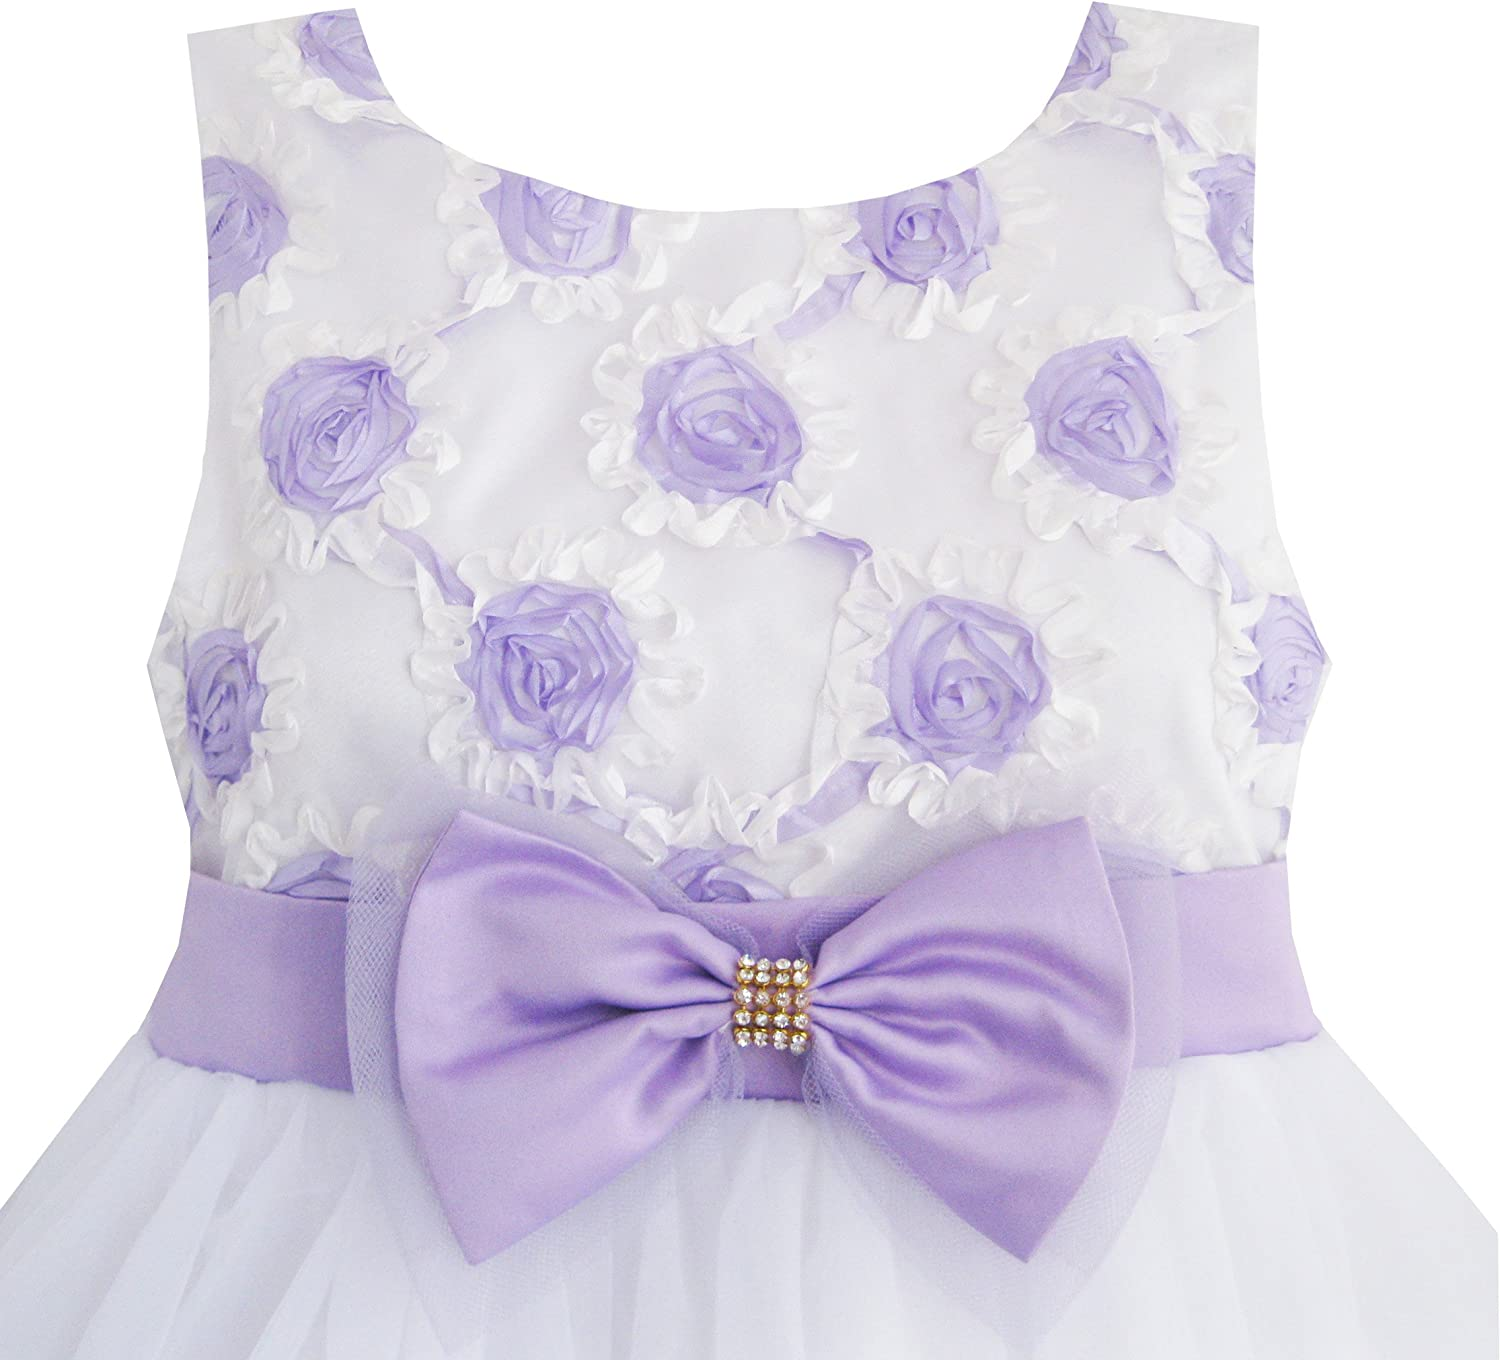 Elegant Girls Dress Purple Flower & White Tulle Design